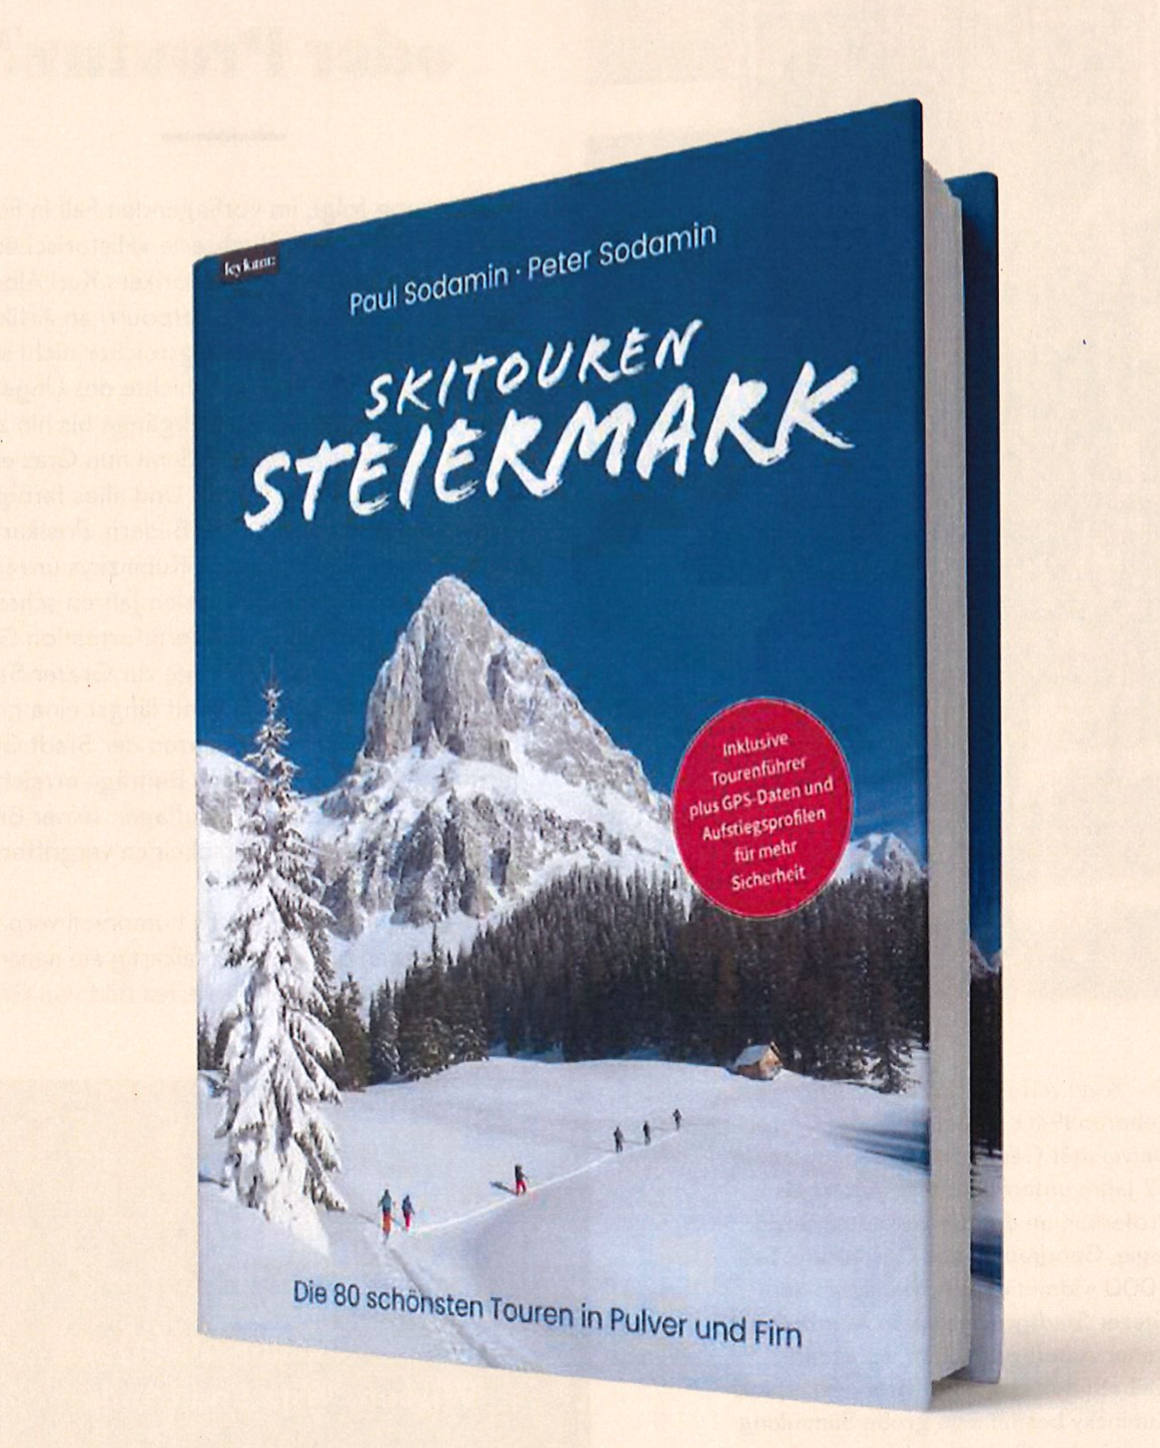 Schitouren Steiermark: Die schönsten Skitouren der Steiermark – vom Dachstein bis zur Koralpe